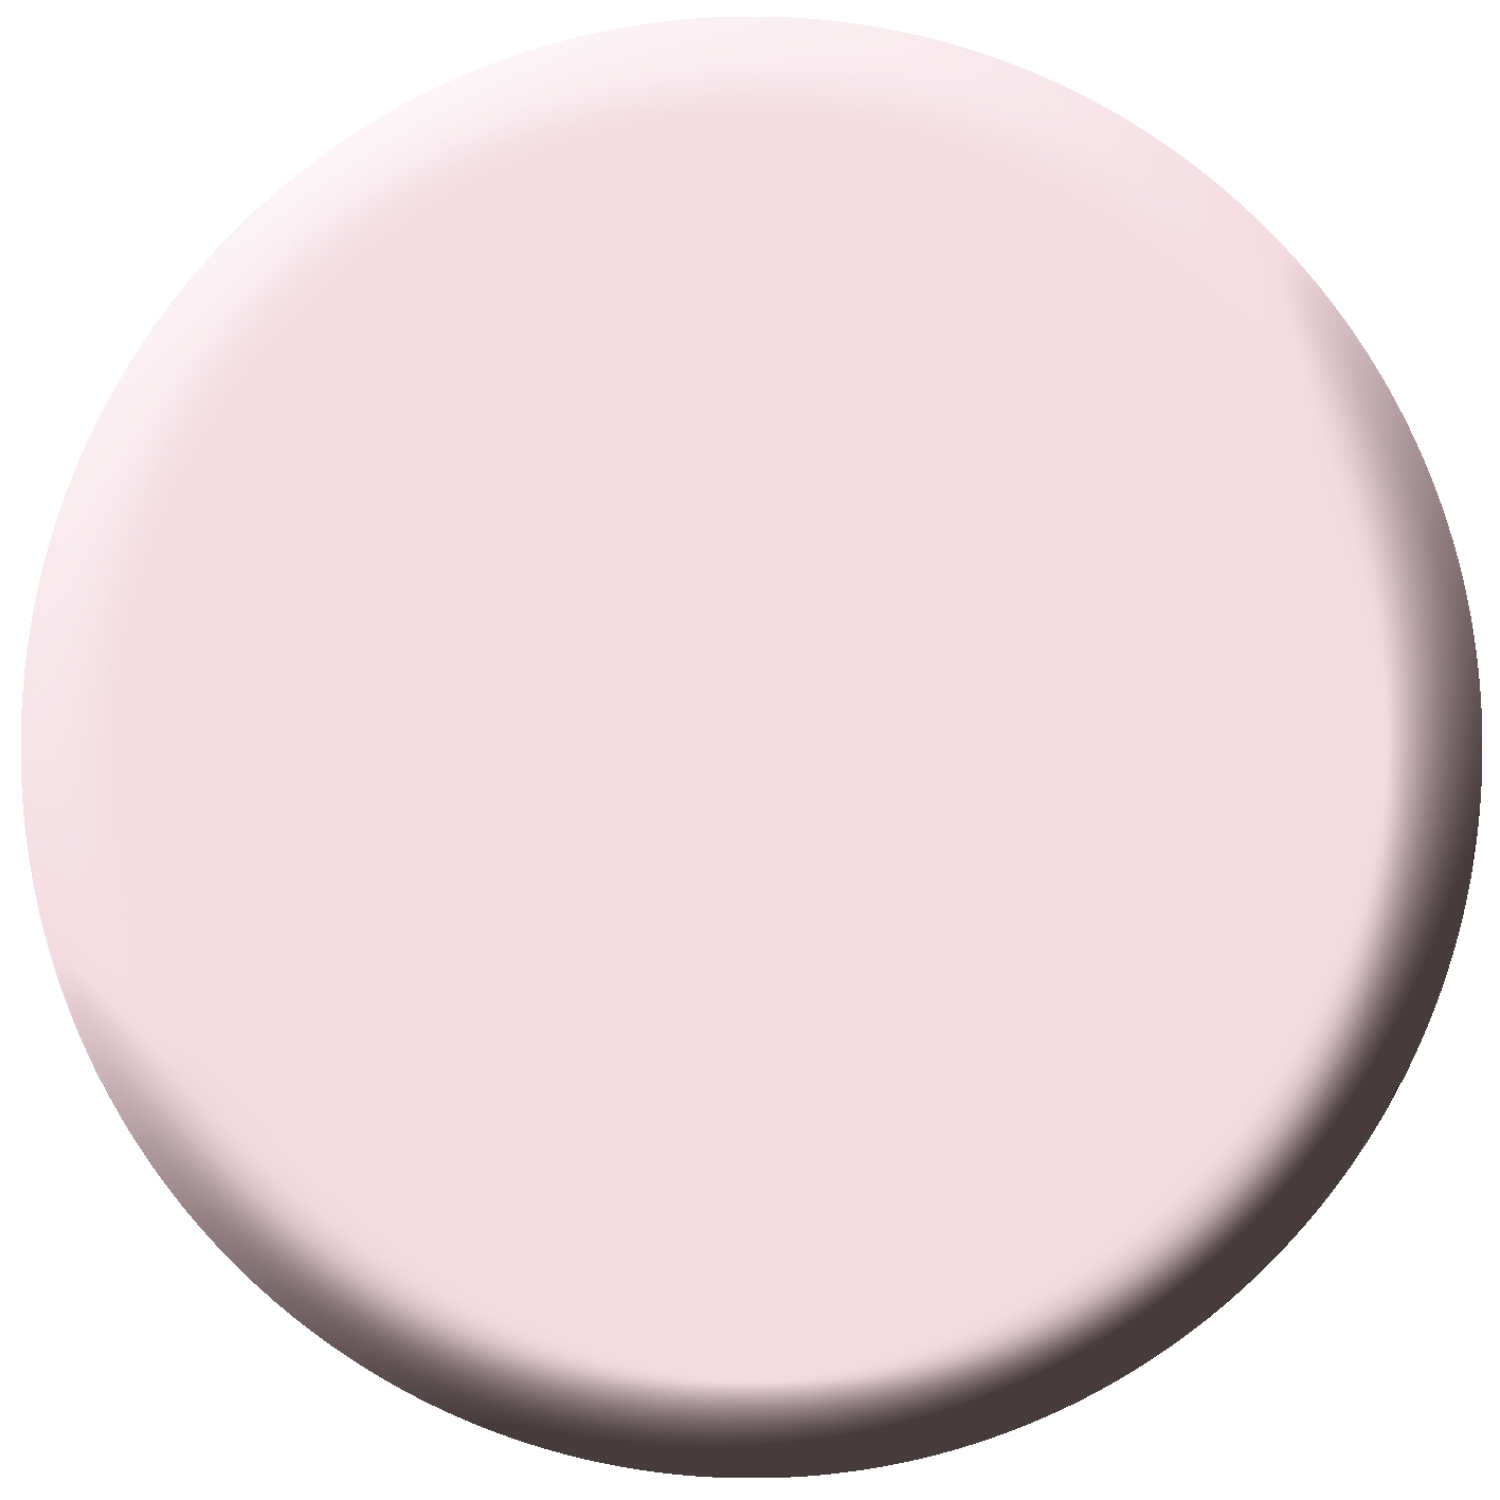 G’lac acryl Poeder Clear Pink White ideaal voor het modeleren van acryl nagels, te sint Niklaas acryl poeder ideaal voor nagel verlengingen